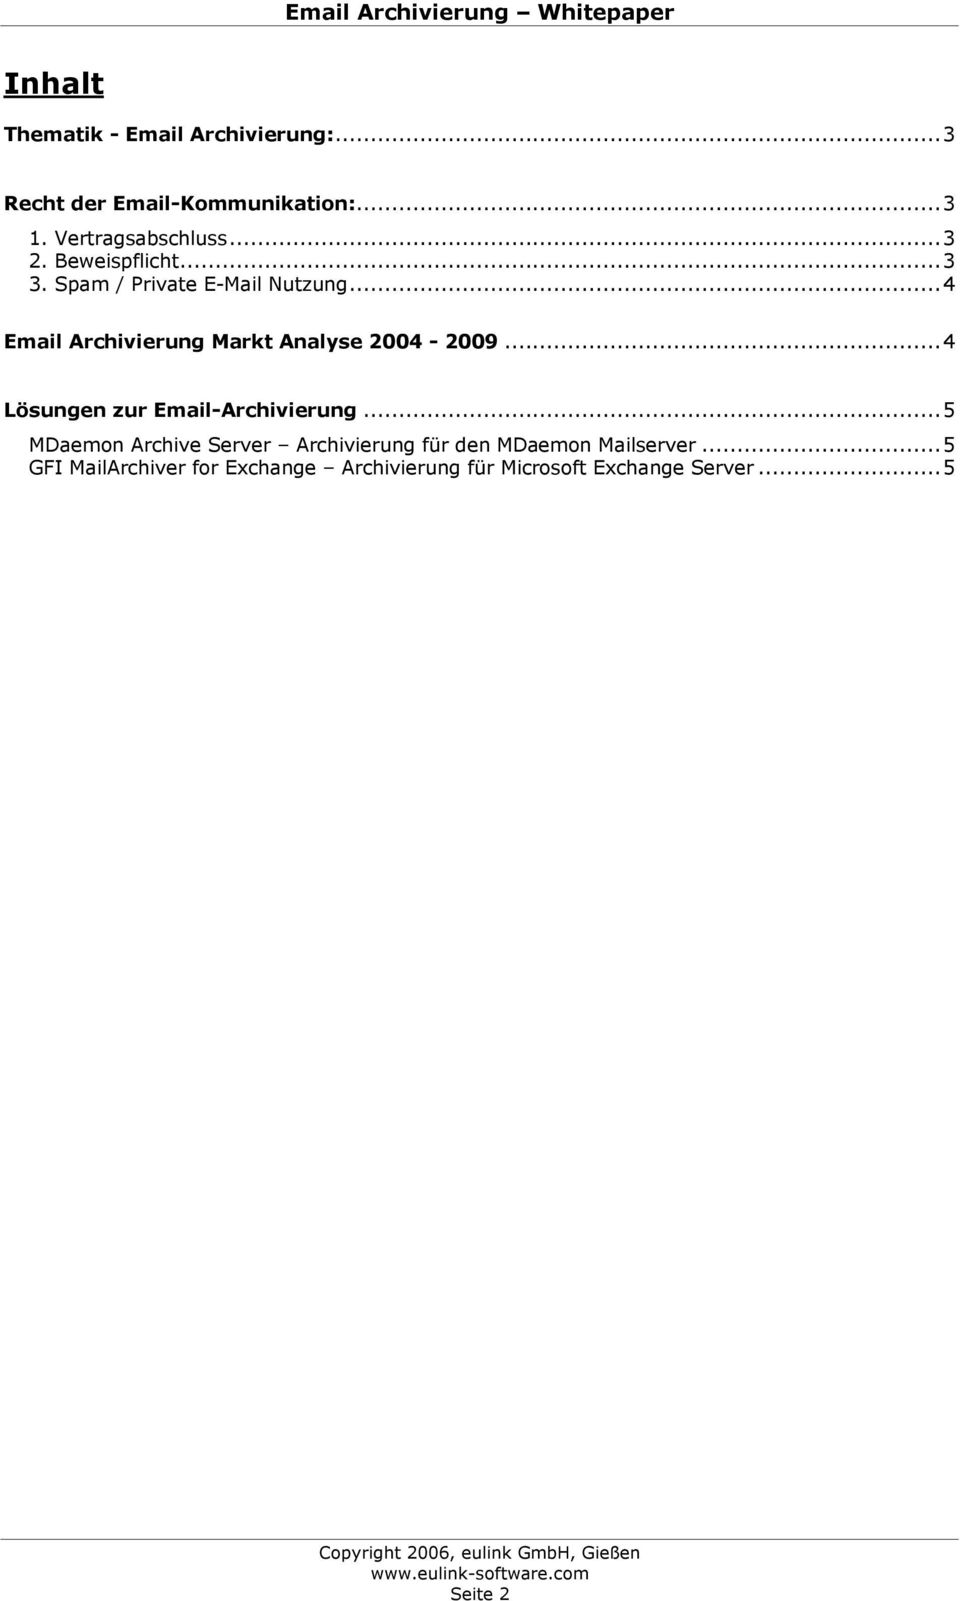 ..4 Email Archivierung Markt Analyse 2004-2009...4 Lösungen zur Email-Archivierung.